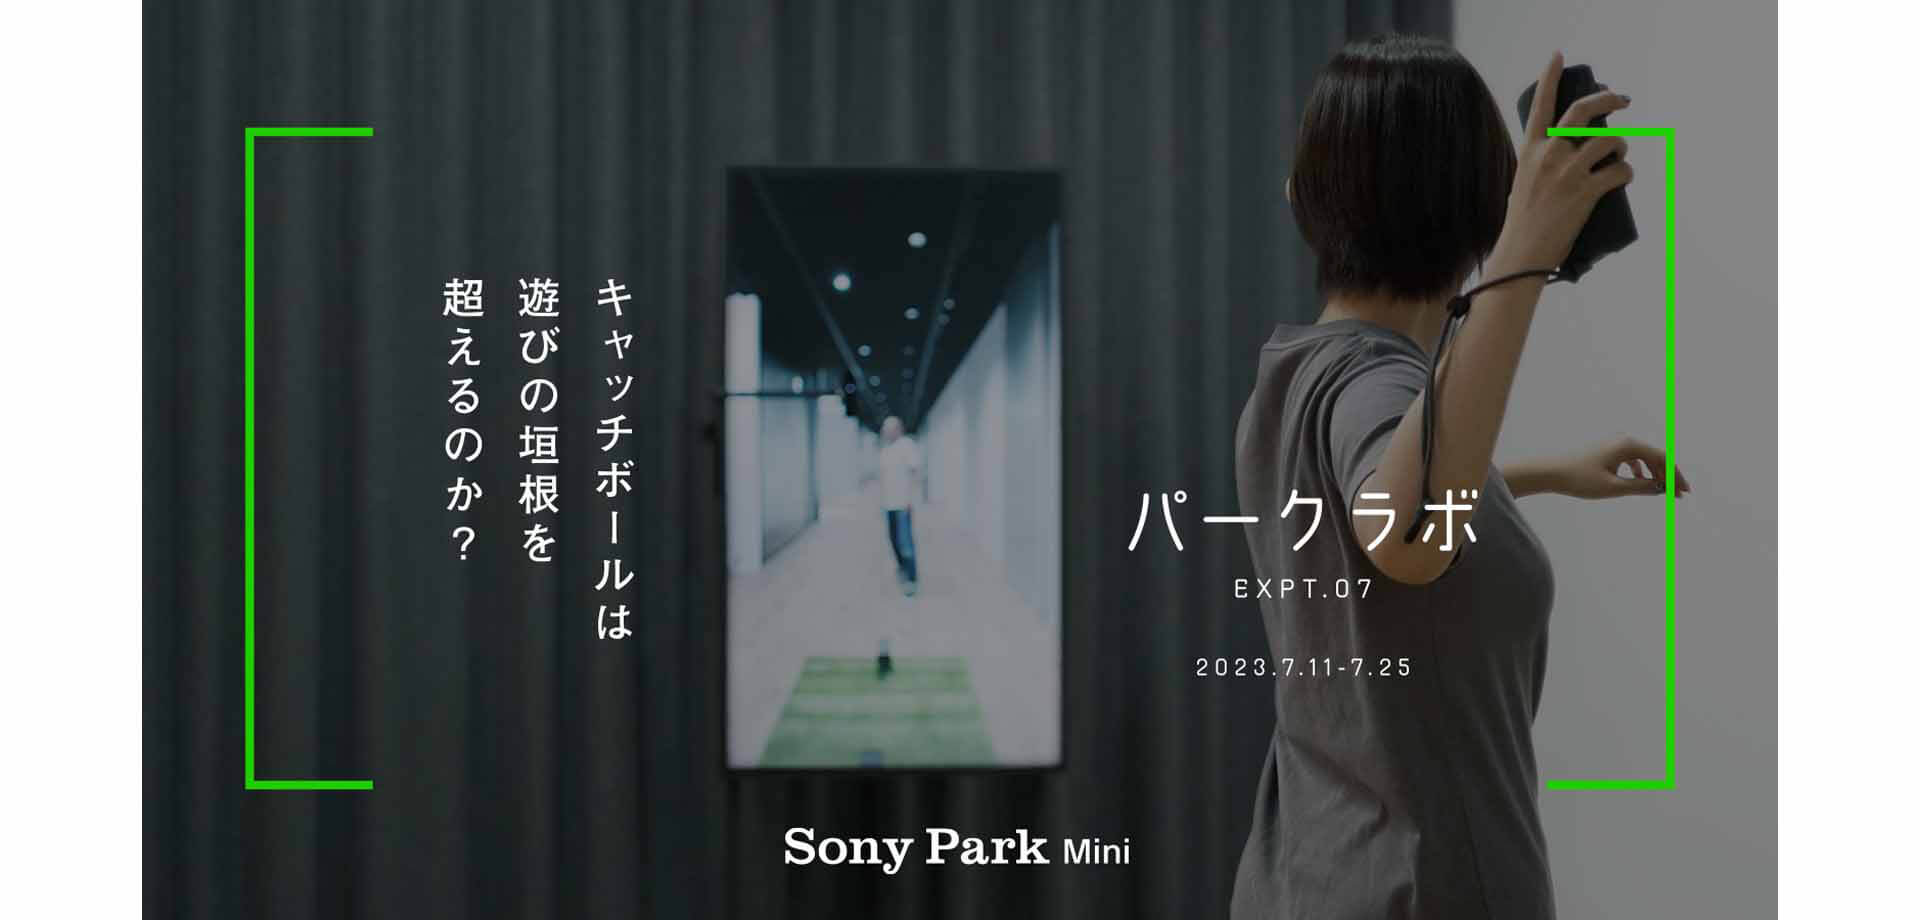 パークラボ EXPT.07 キャッチボール Sony Park Mini 銀座